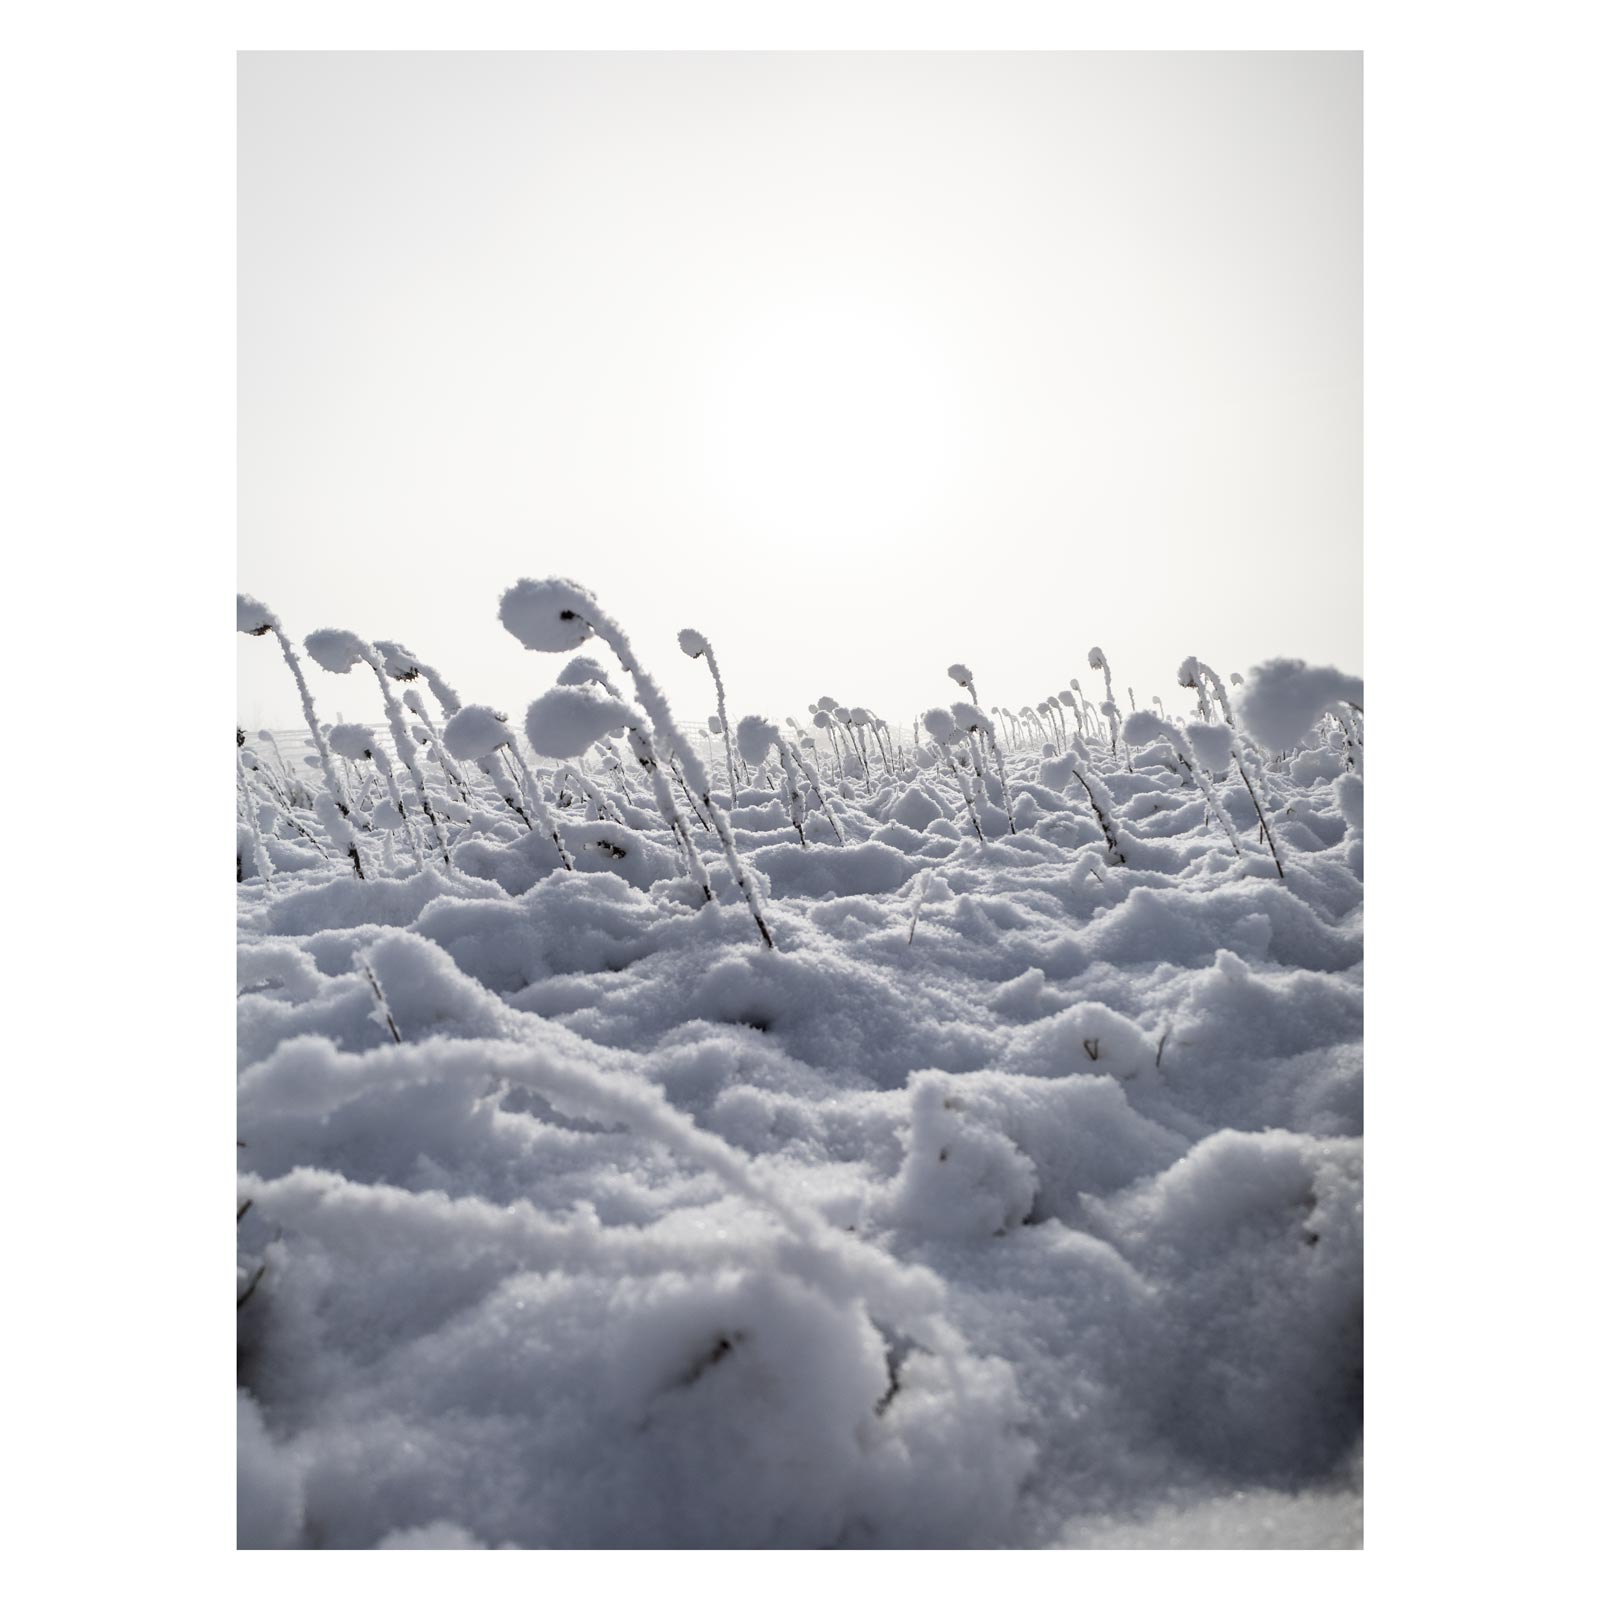 Landschaft Fotografie, Winter, Schnee, Frost, Nebel, steirisches Vulkanland, Kapfenstein, Feldbach, Südoststeiermark, Naturfotografie, Sonnenblumen